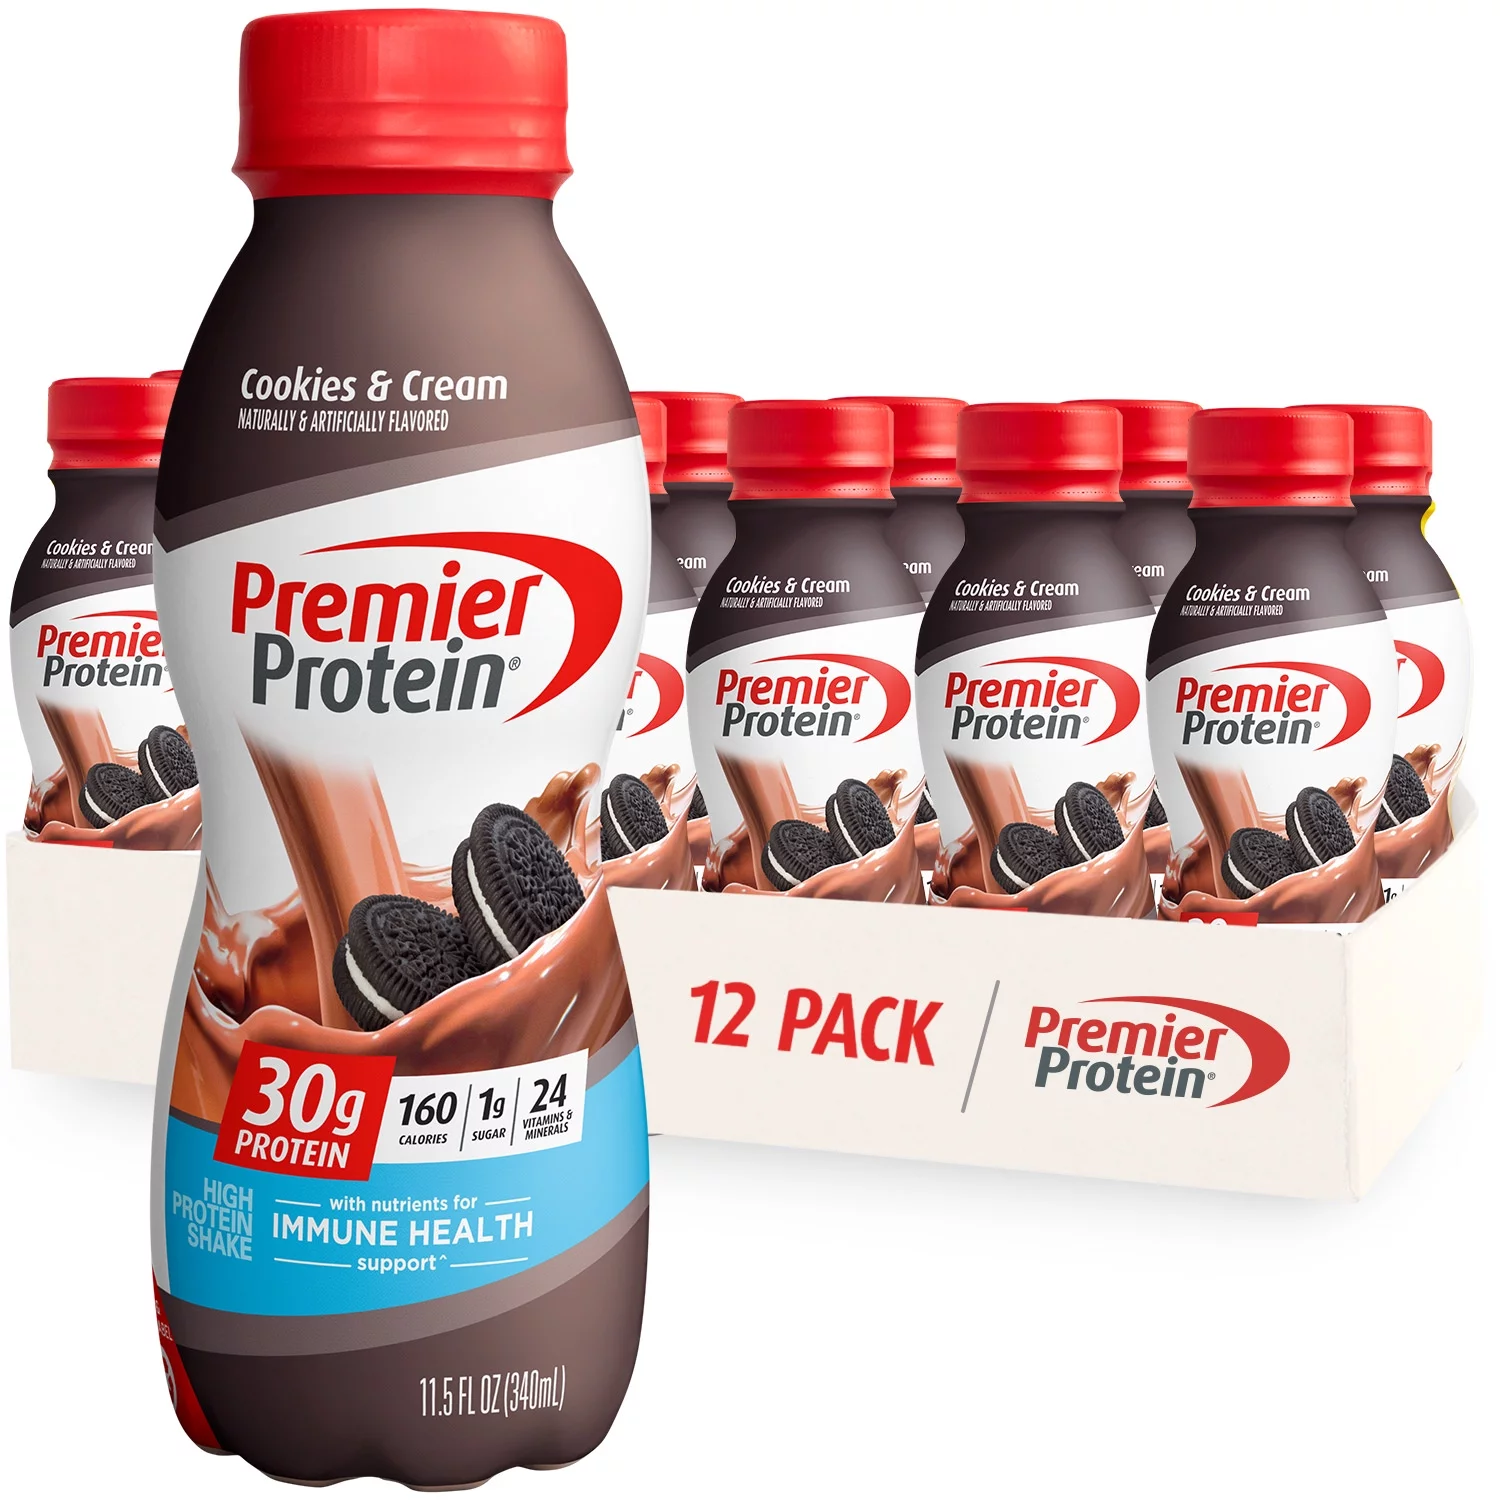 Premier Protein Shake, Cookies & Cream, 30g Protein, 11.5 fl oz, 12 Ct